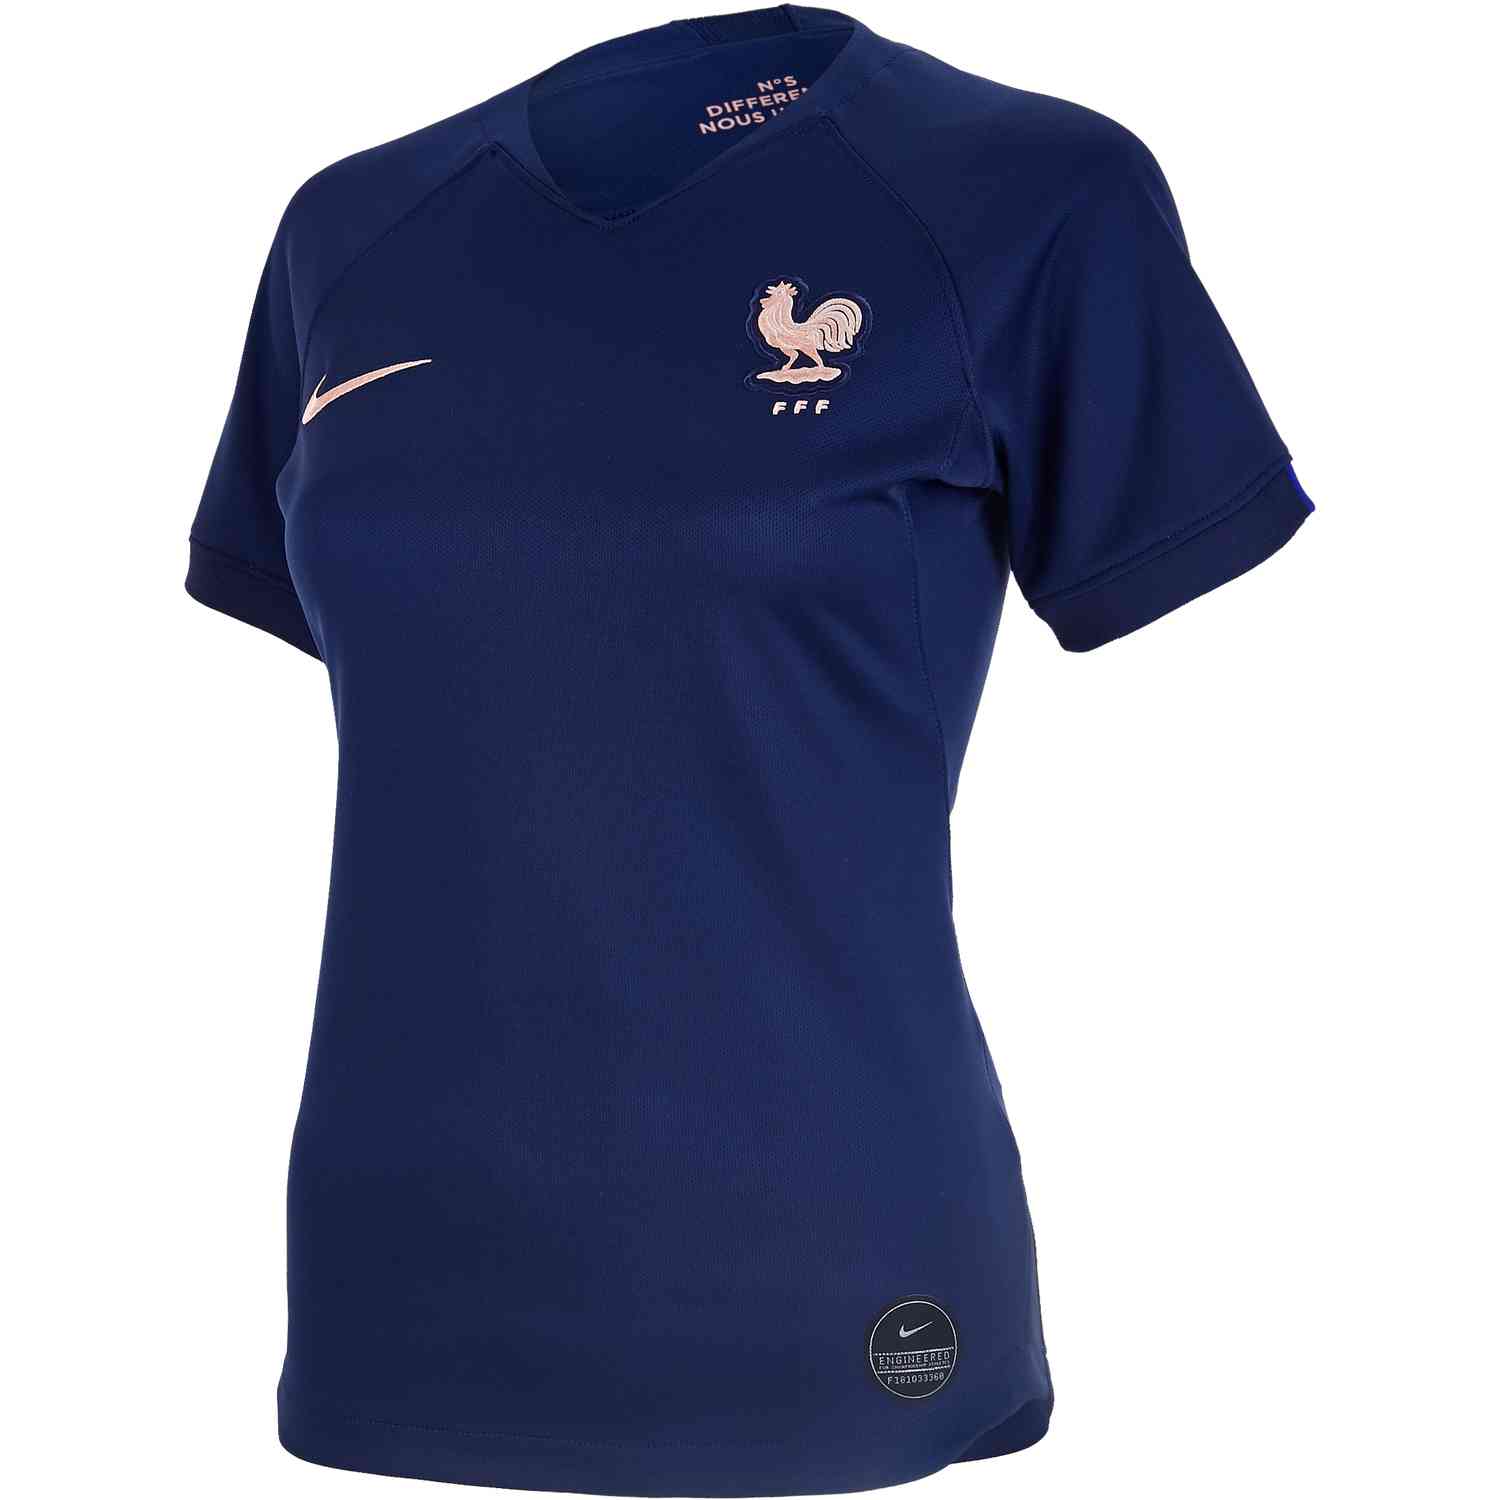 2019 Womens Nike France Home Jersey - SoccerPro